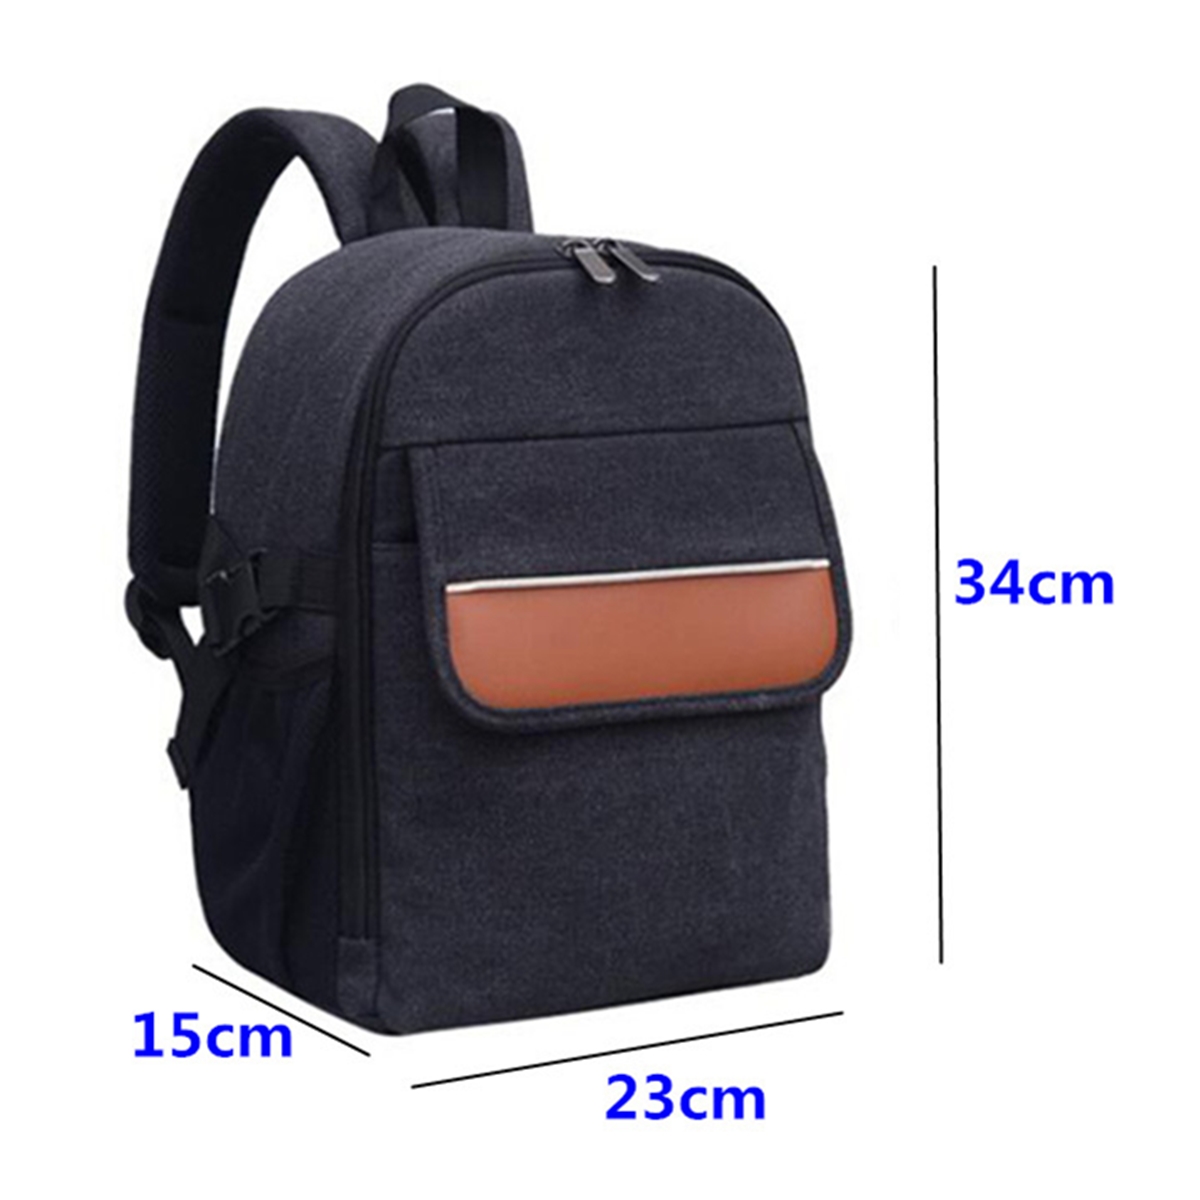 Waterproof Outdoor Backpack Rucksack Shoulder Travel Bag Case For DSLR Camera 34